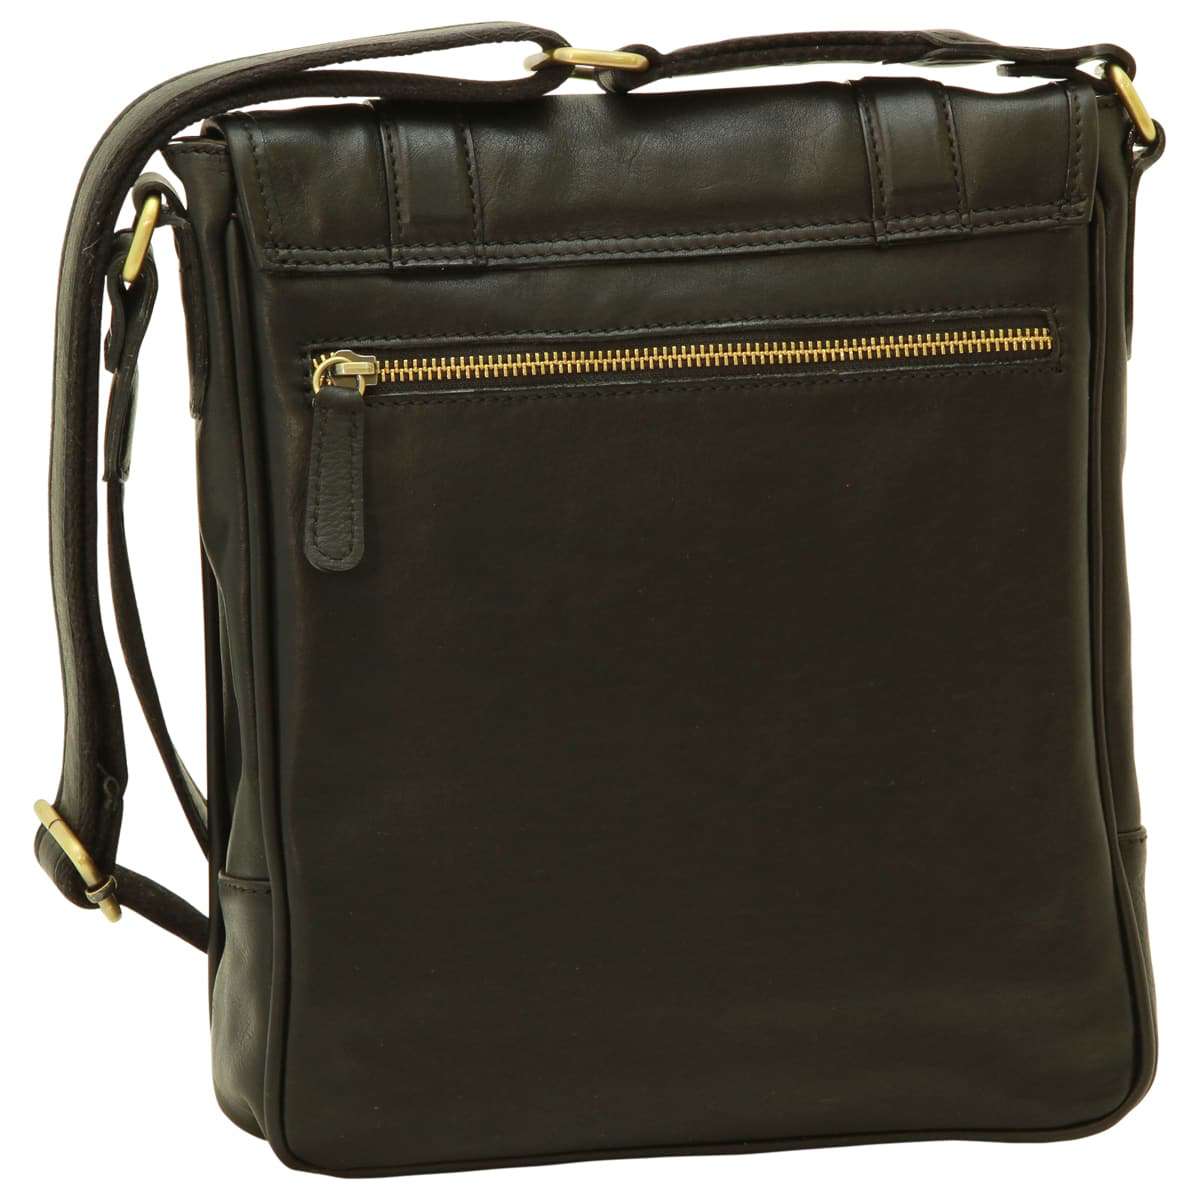 Soft Calfskin Leather Satchel Bag - Black | 031091NE UK | Old Angler Firenze